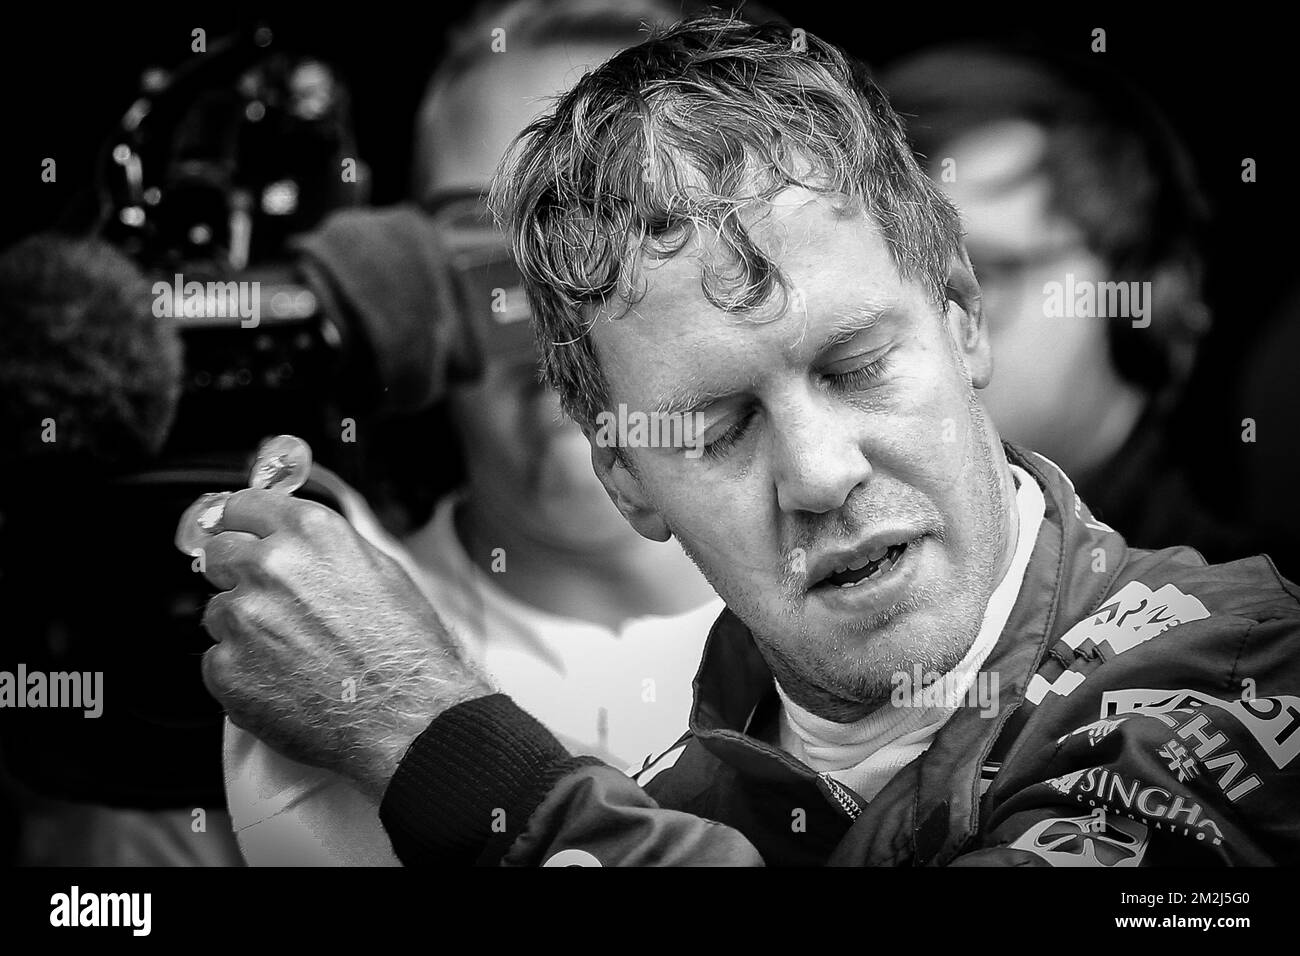 Il pilota tedesco della Ferrari Sebastian Vettel festeggia dopo il Gran Premio di Formula uno di Spa-Francorchamps in Belgio, domenica 26 agosto 2018 a Spa-Francorchamps. FOTO DI BELGA BRUNO FAHY Foto Stock